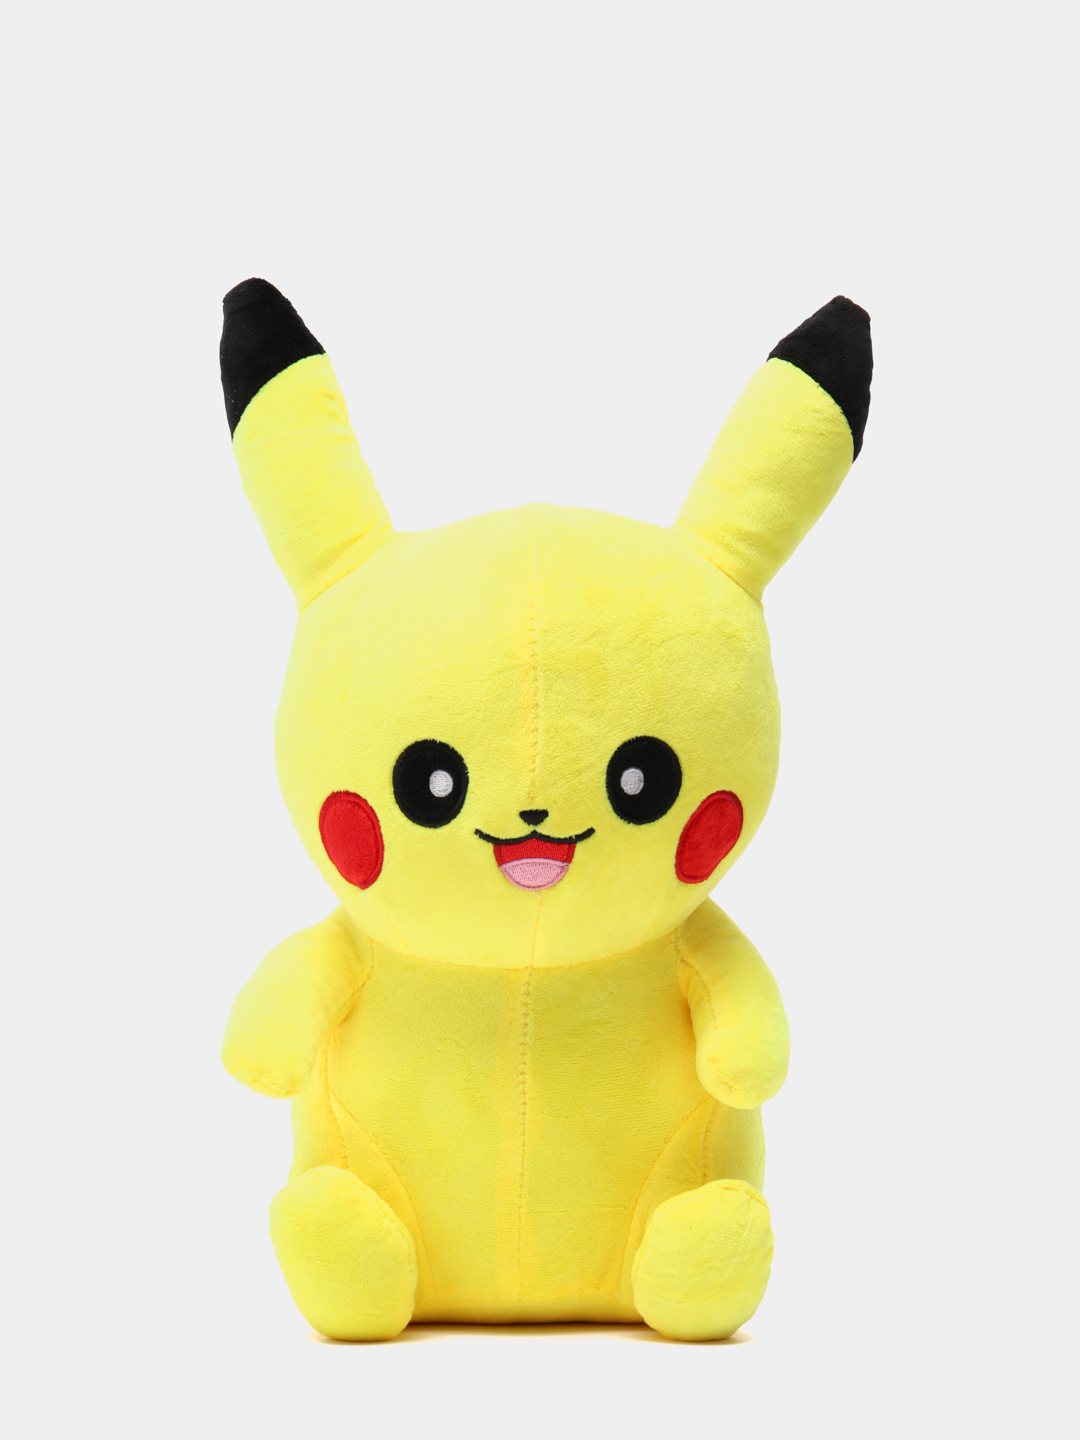 Мягкая игрушка UDiViSH Покемон Пикачу 25 см желтый бейсболки cl pkm2 3 pik6 junior pokemon pikachu желтый желтый